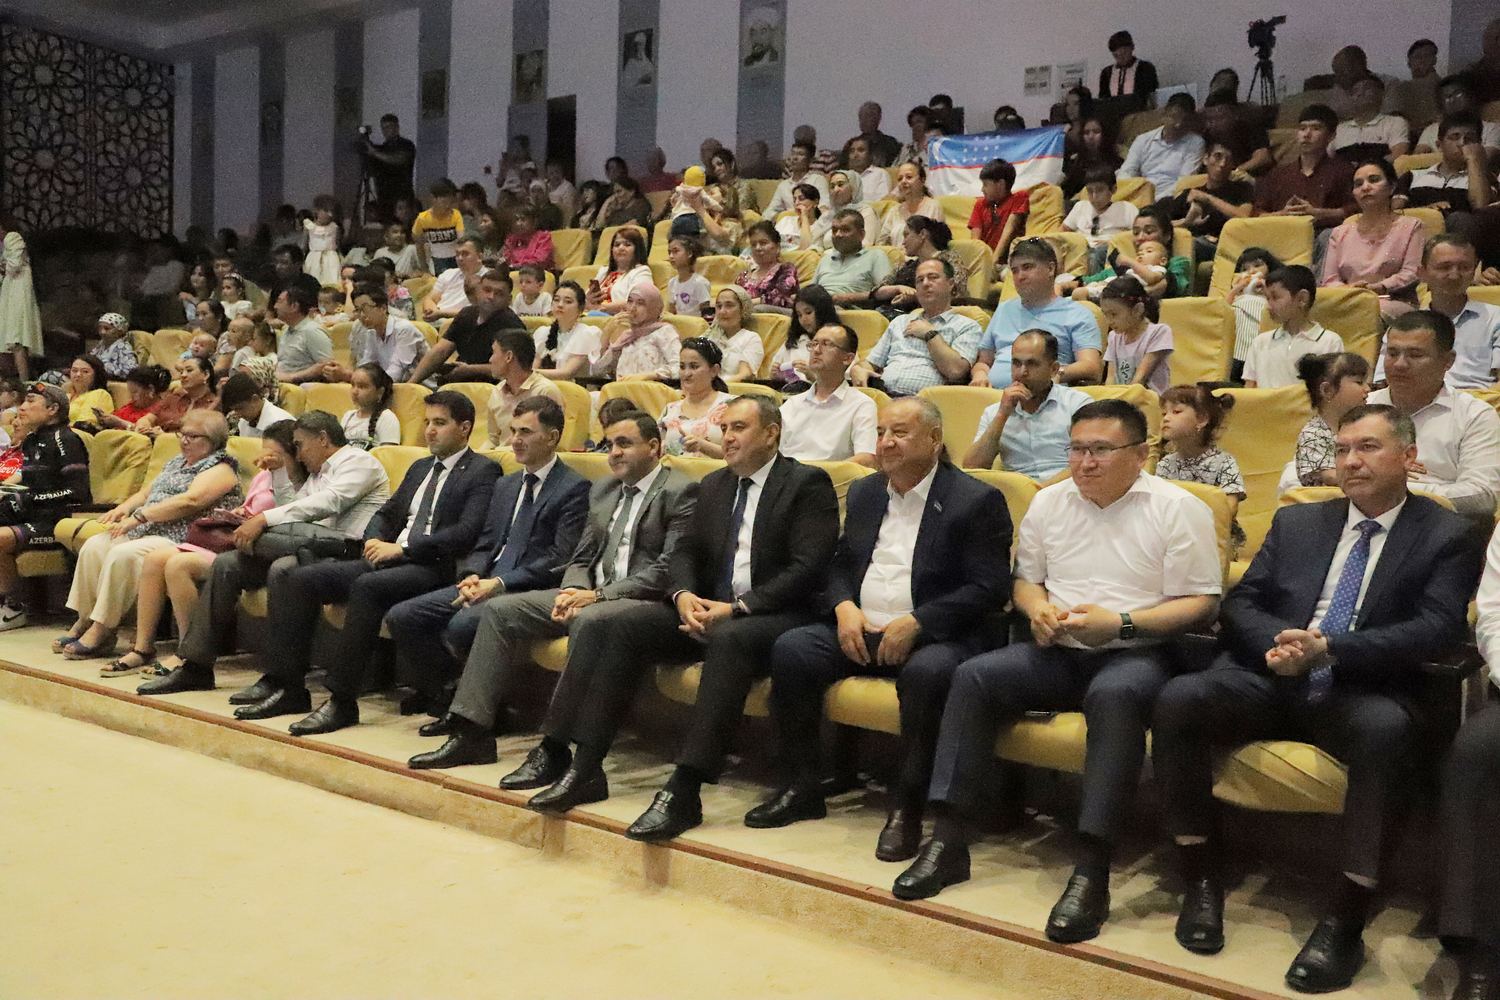 В Самарканде прошли Дни азербайджанской музыки (ФОТО)